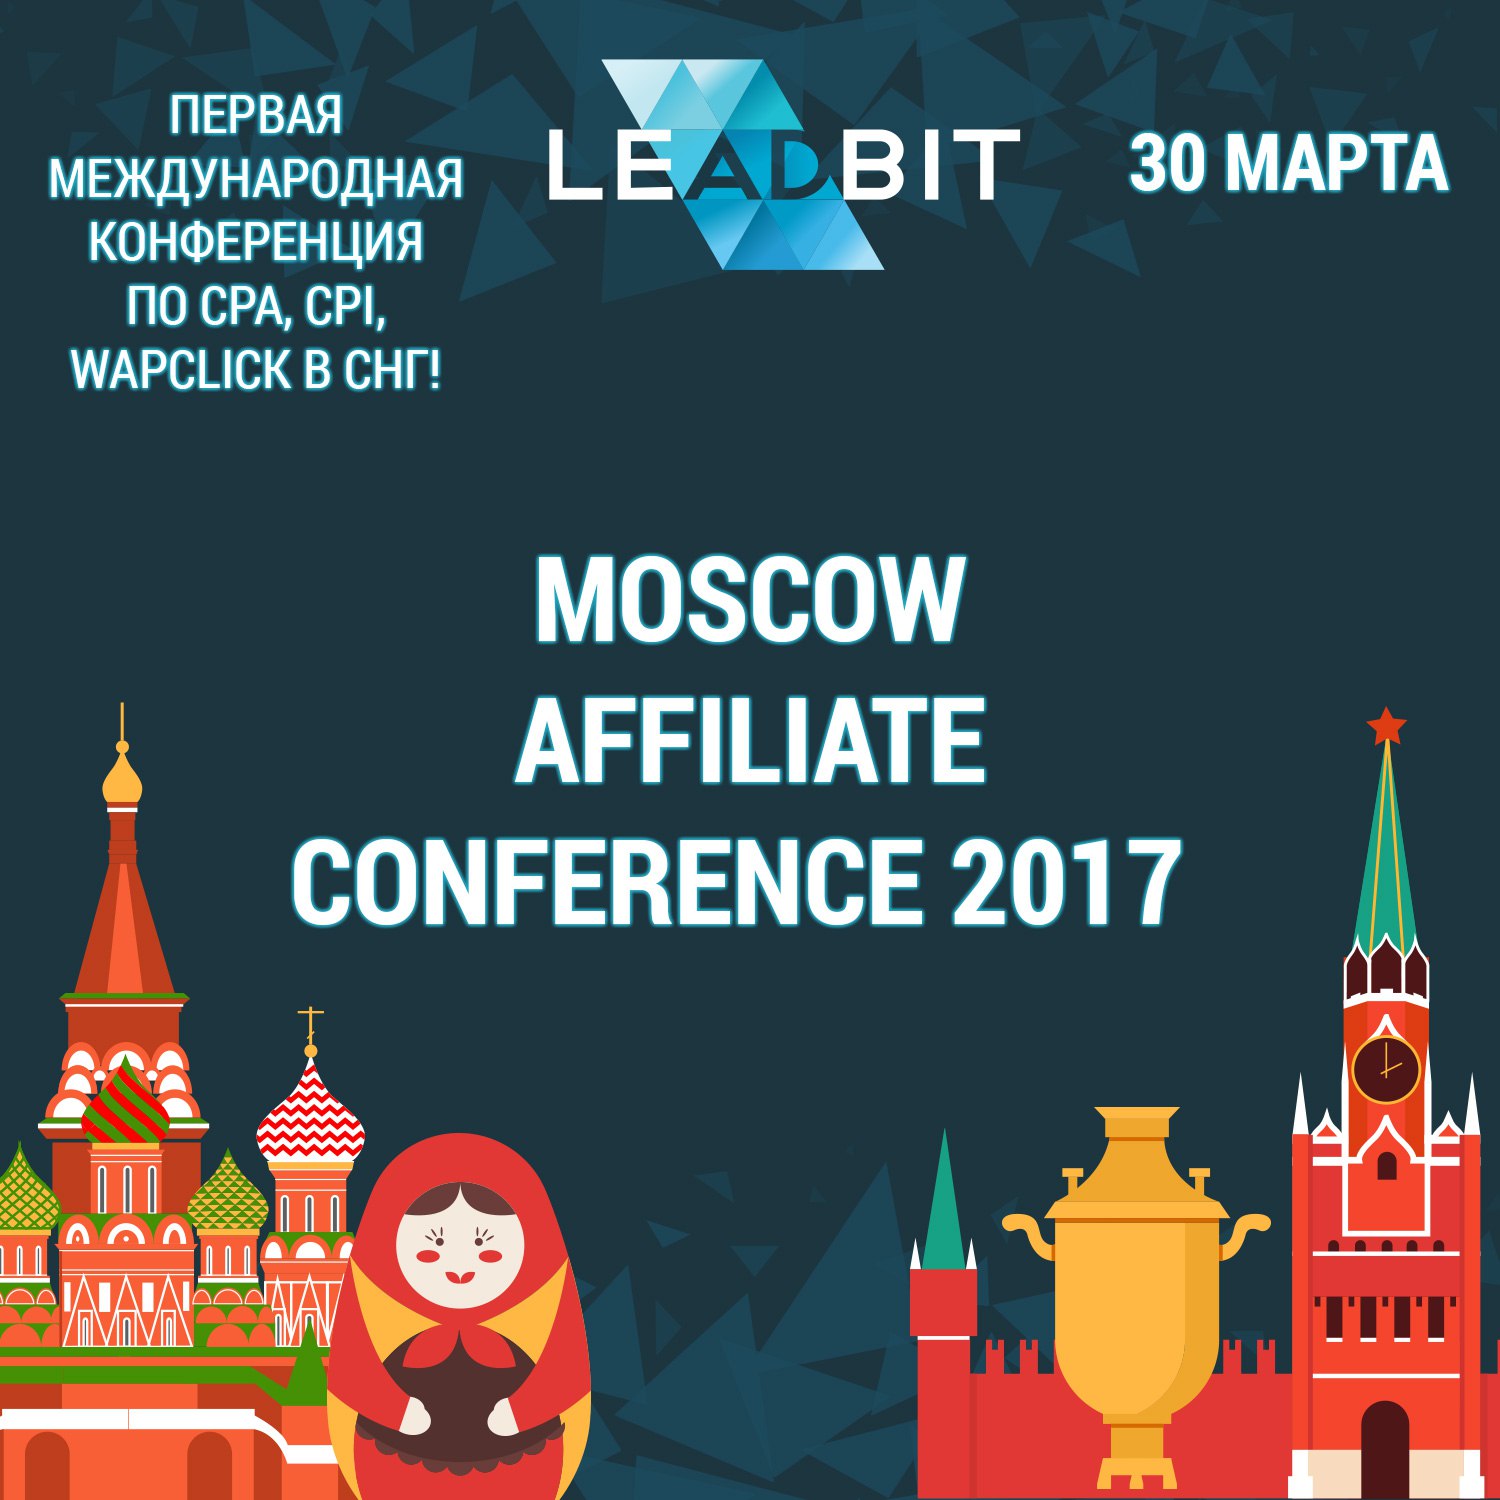 Moscow Affiliate Conference & Party впервые в Москве!